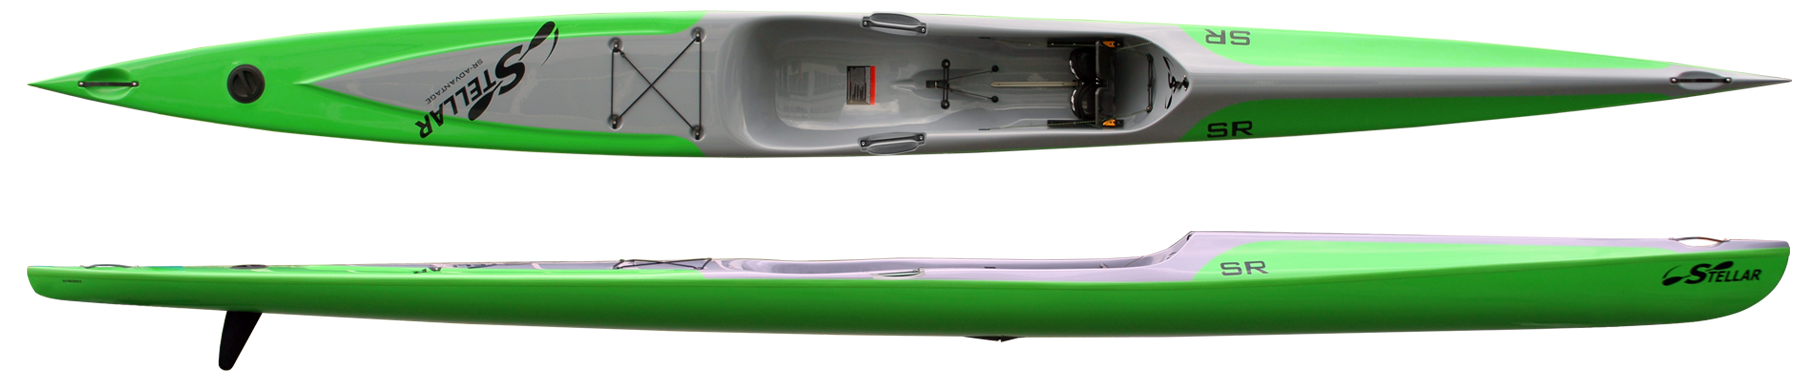 Kayaks: Racer (SR) by Stellar Kayaks - Image 4716